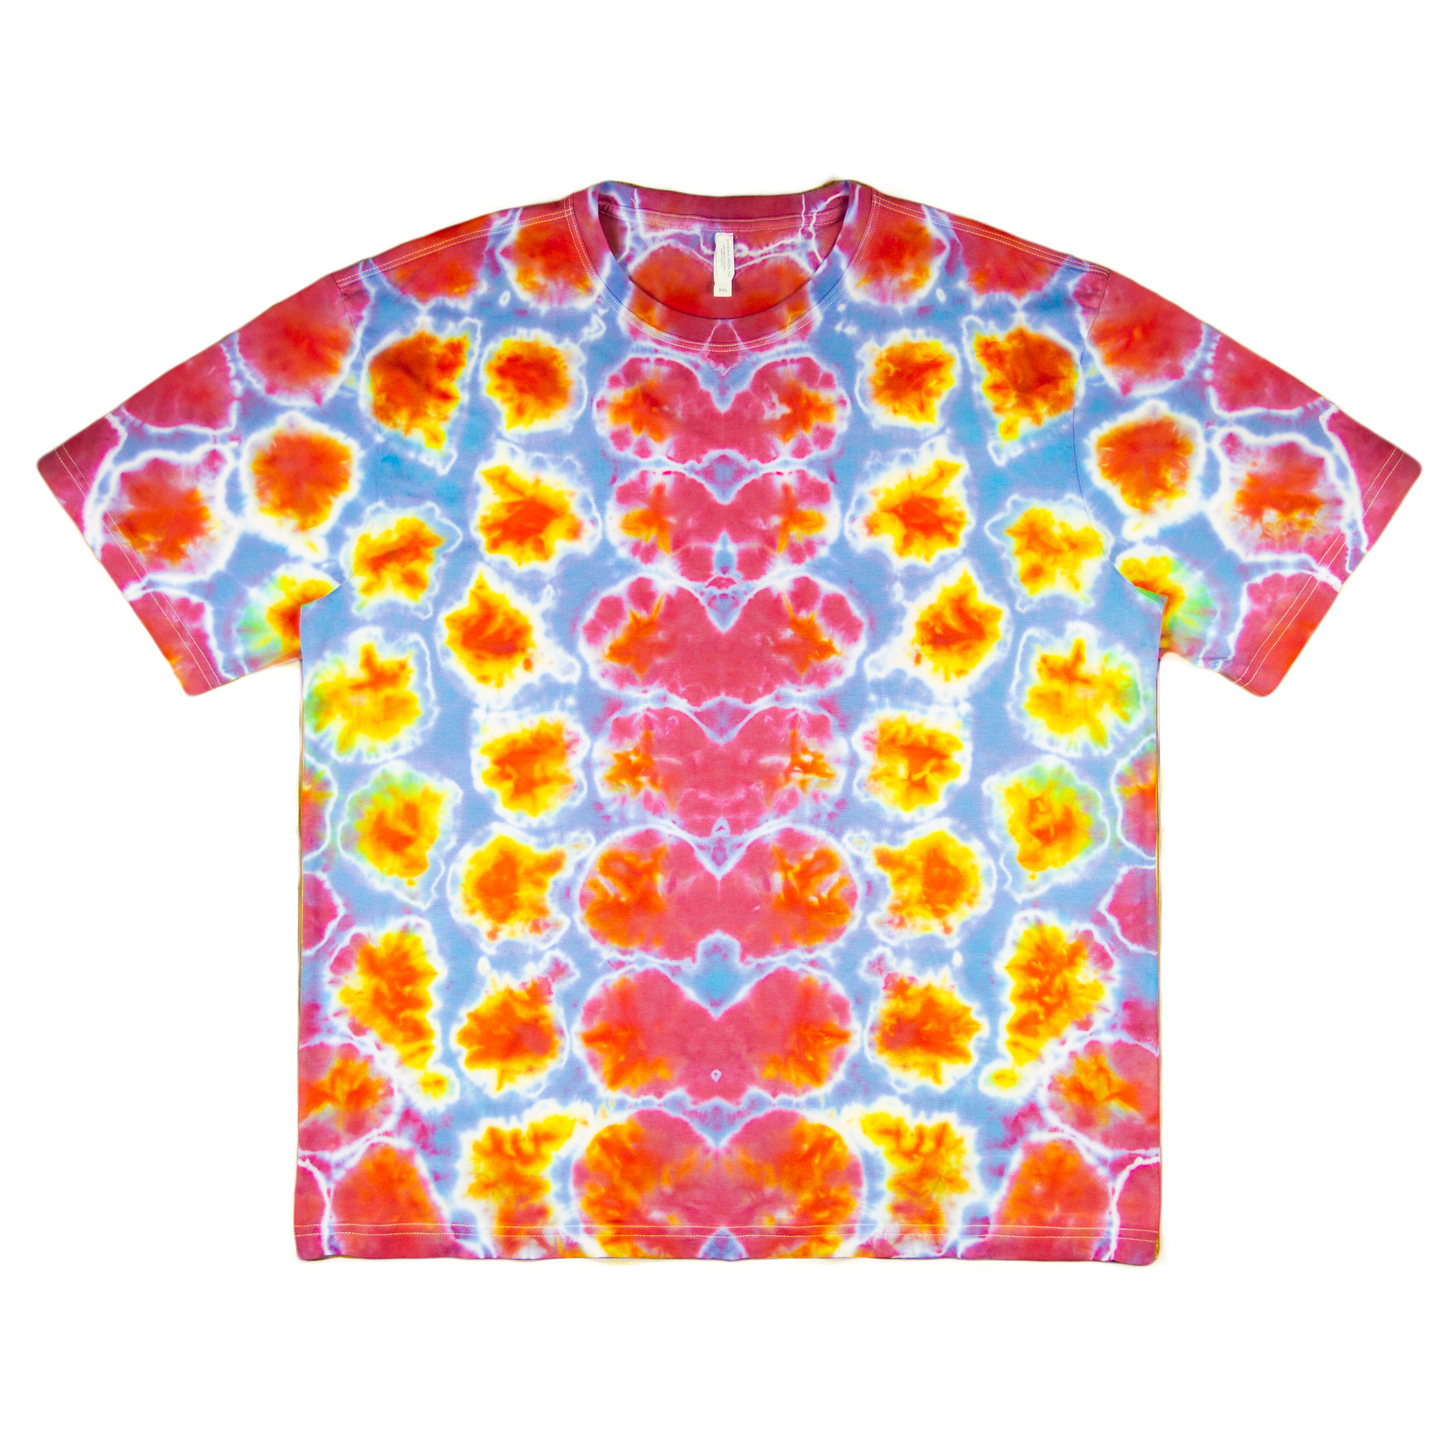 Ne-Maki Shibori 'Mirrored' T-Shirt Supima (2XL)